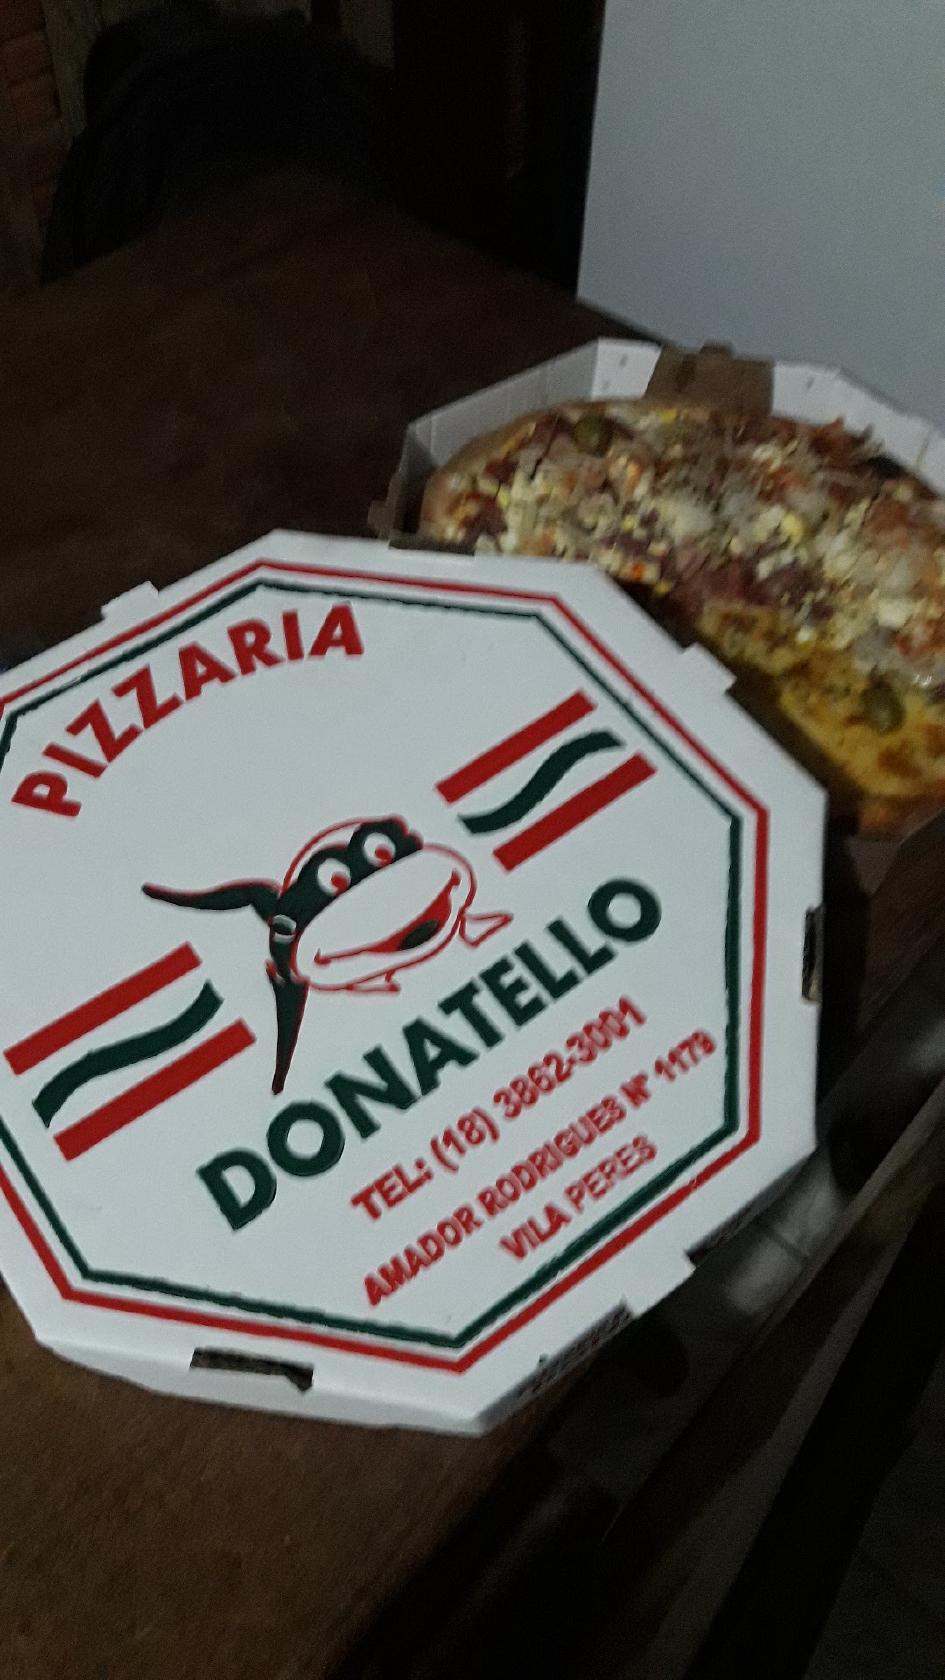 PIZZARIA DONATELLO está atendendo com entregas em Pacaembu, Irapuru e  Flórida Paulista - Folha Regional Pacaembu